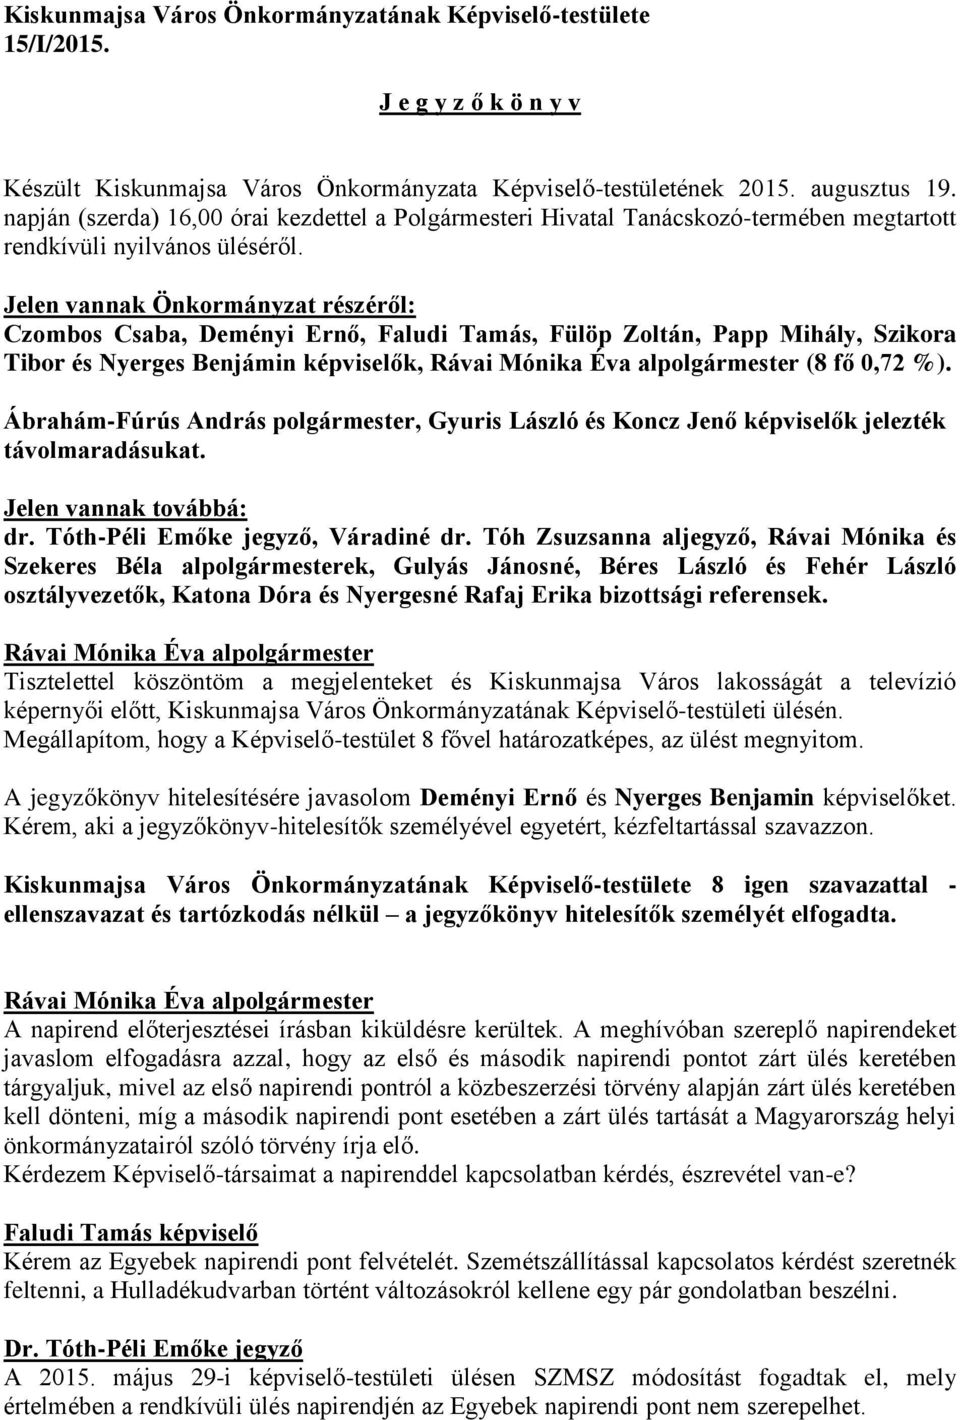 Jelen vannak Önkormányzat részéről: Czombos Csaba, Deményi Ernő, Faludi Tamás, Fülöp Zoltán, Papp Mihály, Szikora Tibor és Nyerges Benjámin képviselők, (8 fő 0,72 %).